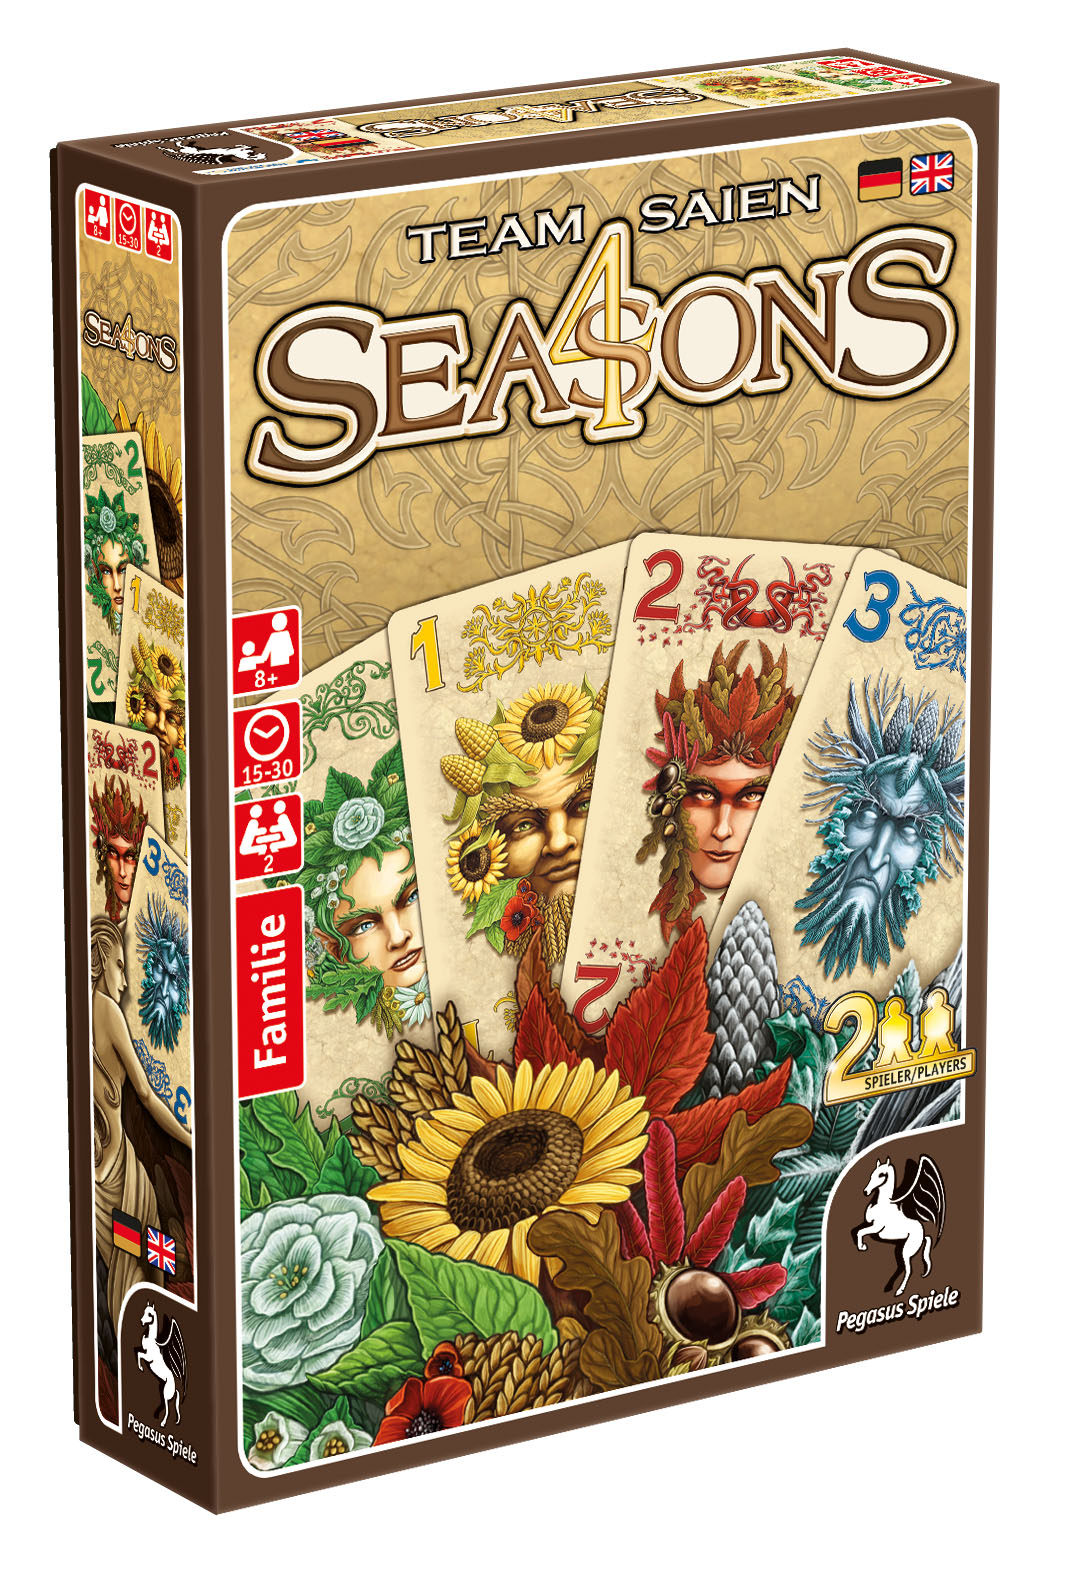 4 Seasons von Team Saien wir im Mai veröffentlicht